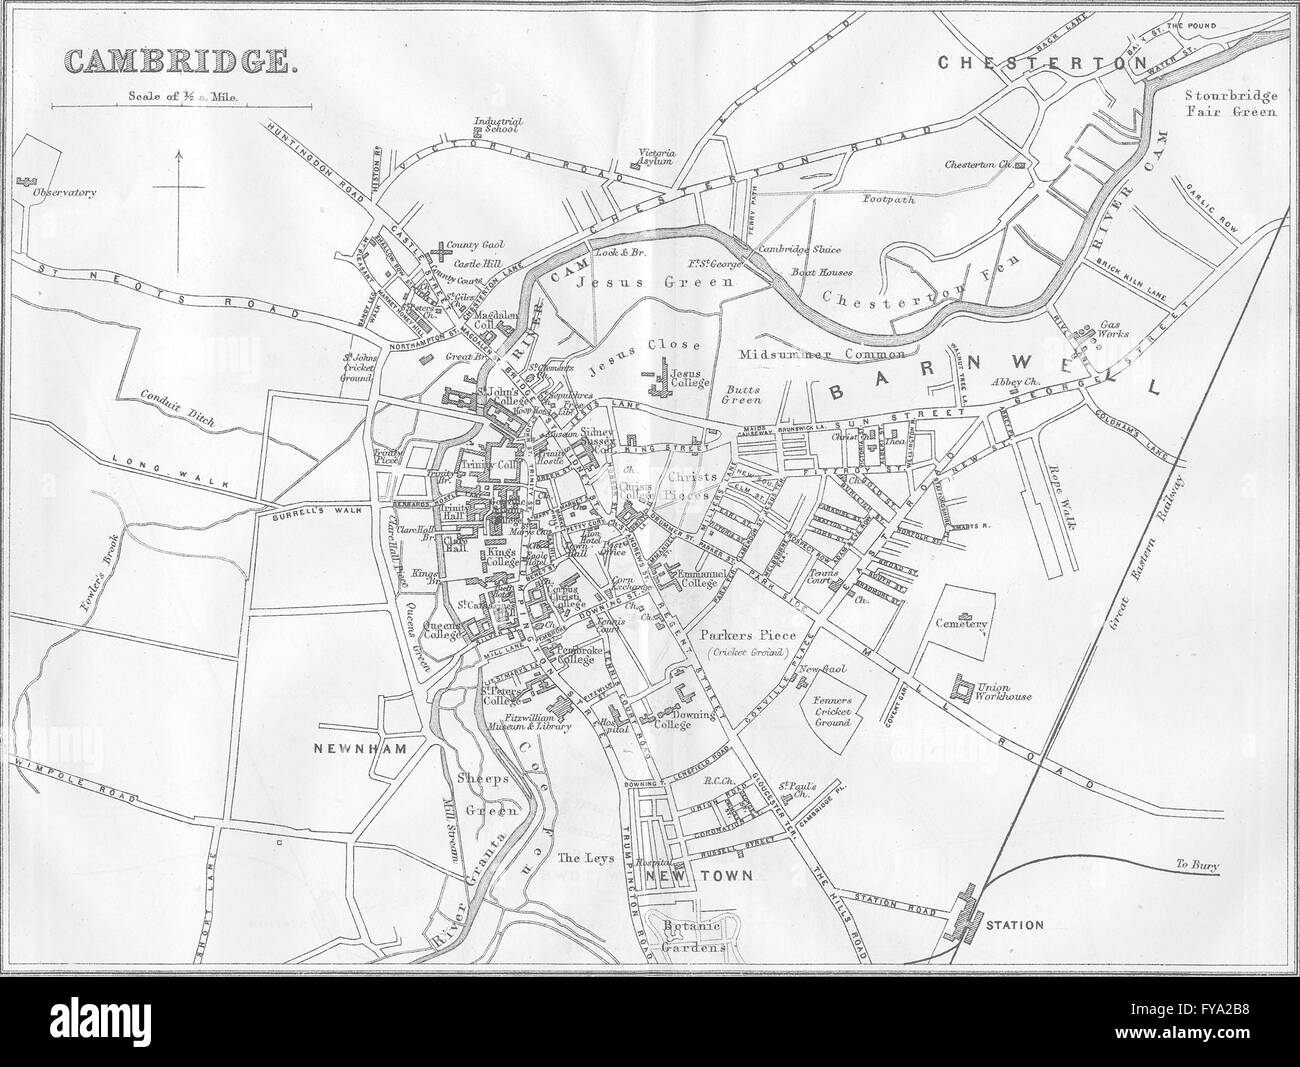 Paris : plan de la ville de Cambridge, 1874 carte antique Banque D'Images